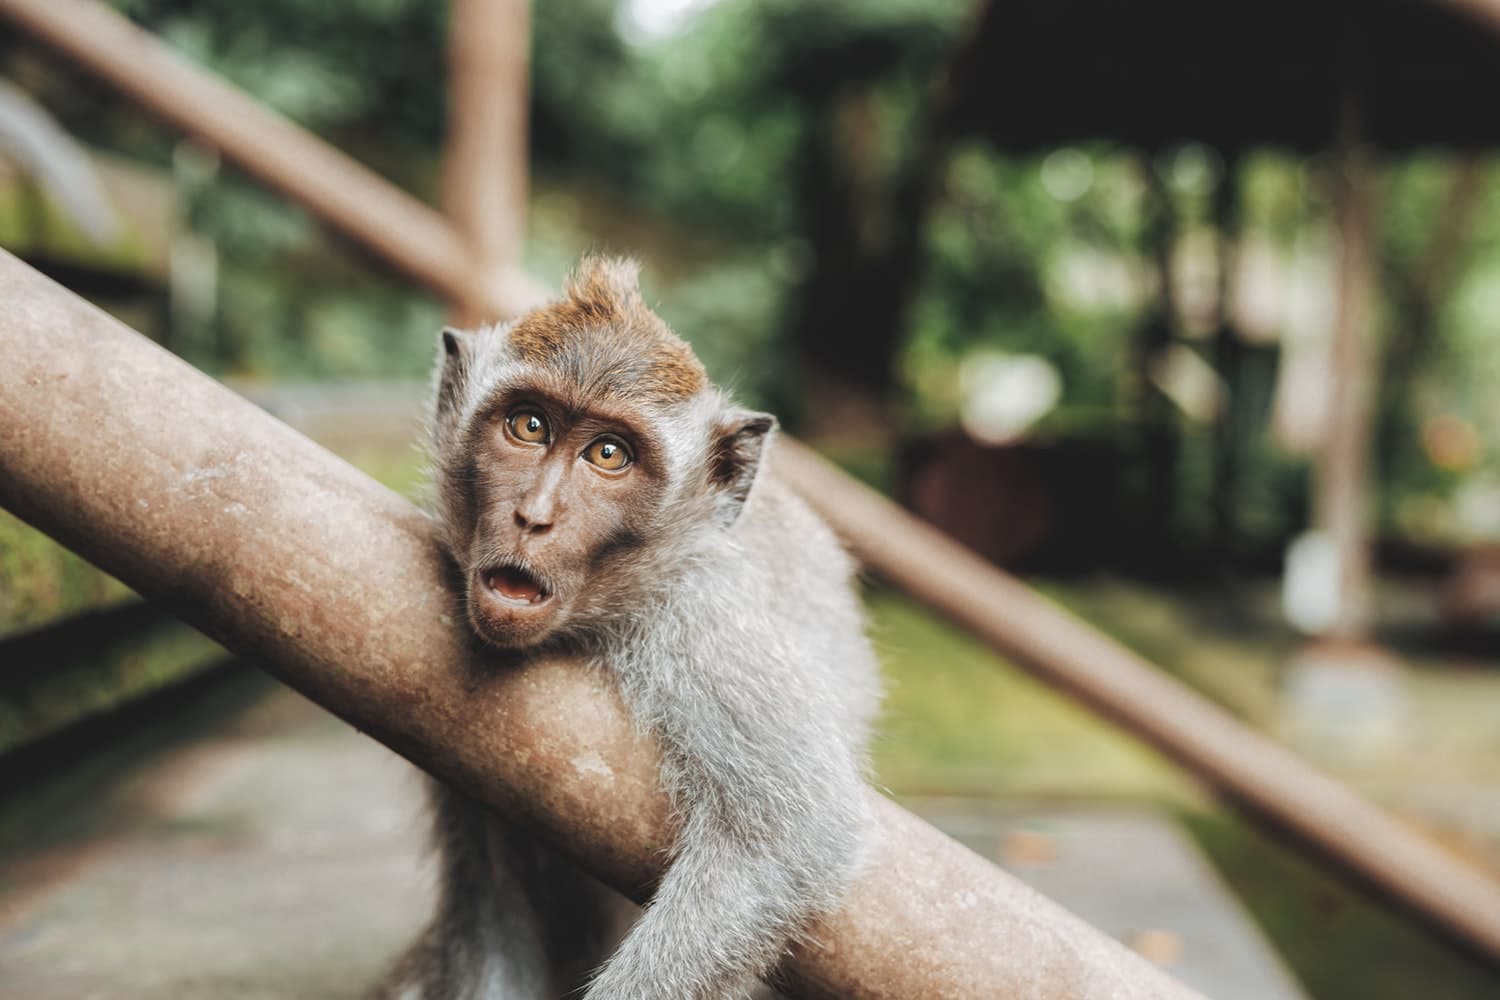 Ein Affe klammert sich an einem Treppengeländer fest. Er hat den Mund geöffnet und sieht erstaunt aus